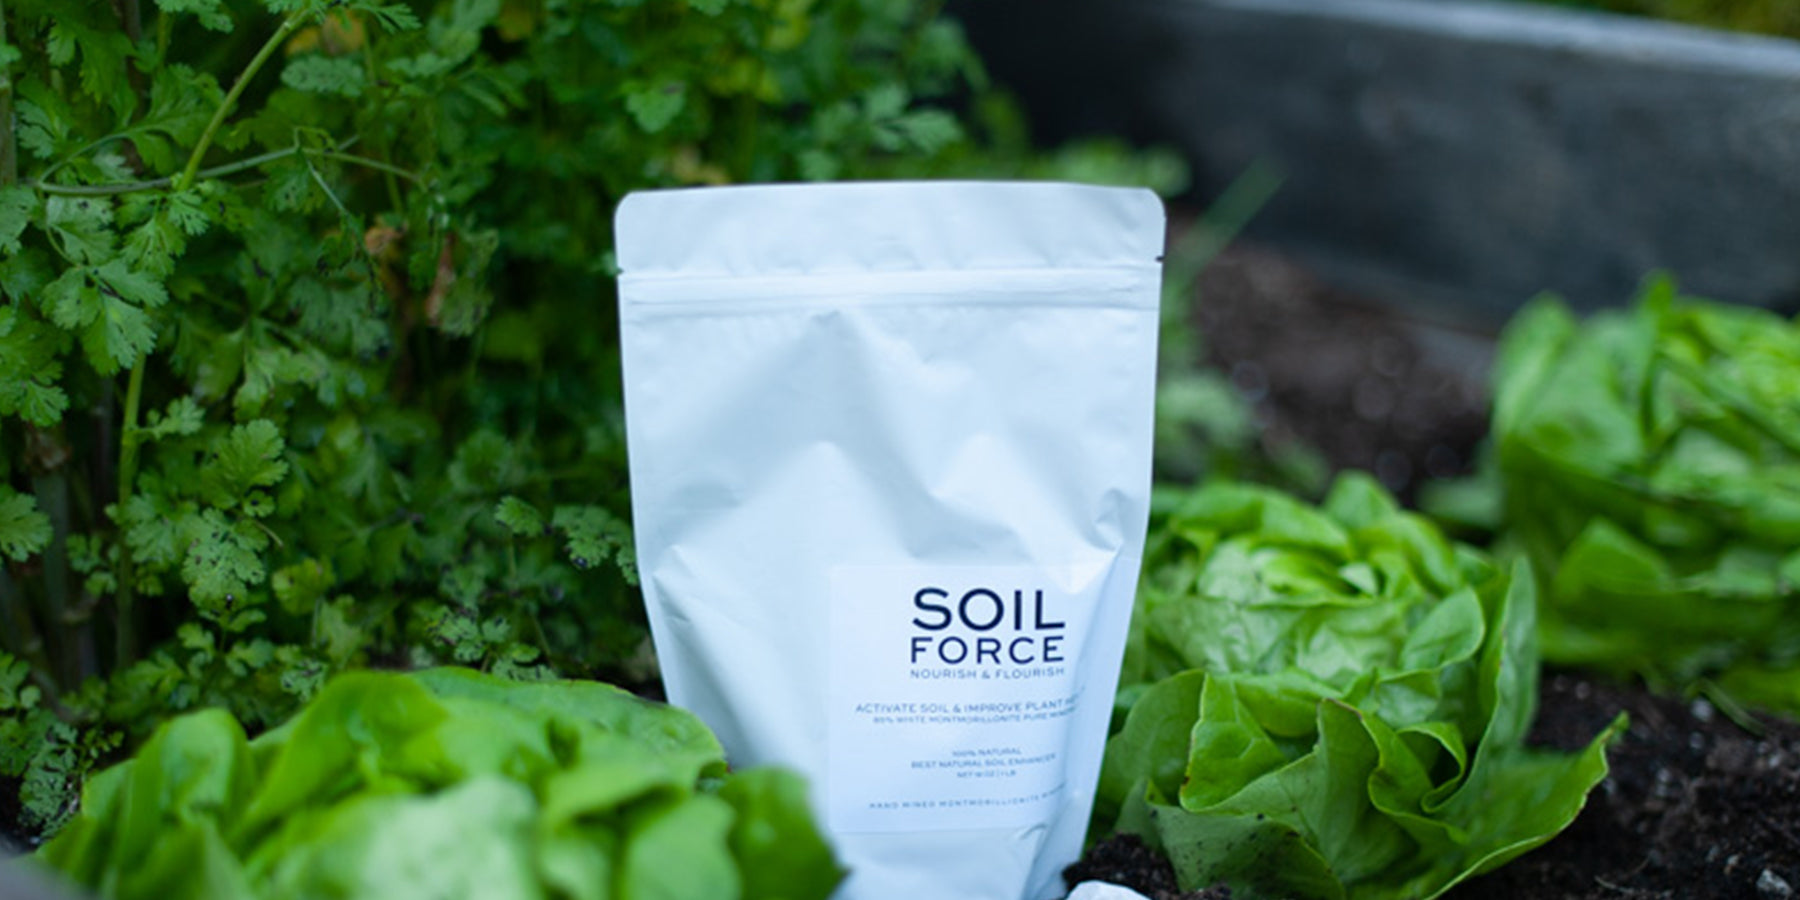 Soil Force The Purest 'White Montmorillonite' For Nutrient-Dense Soil